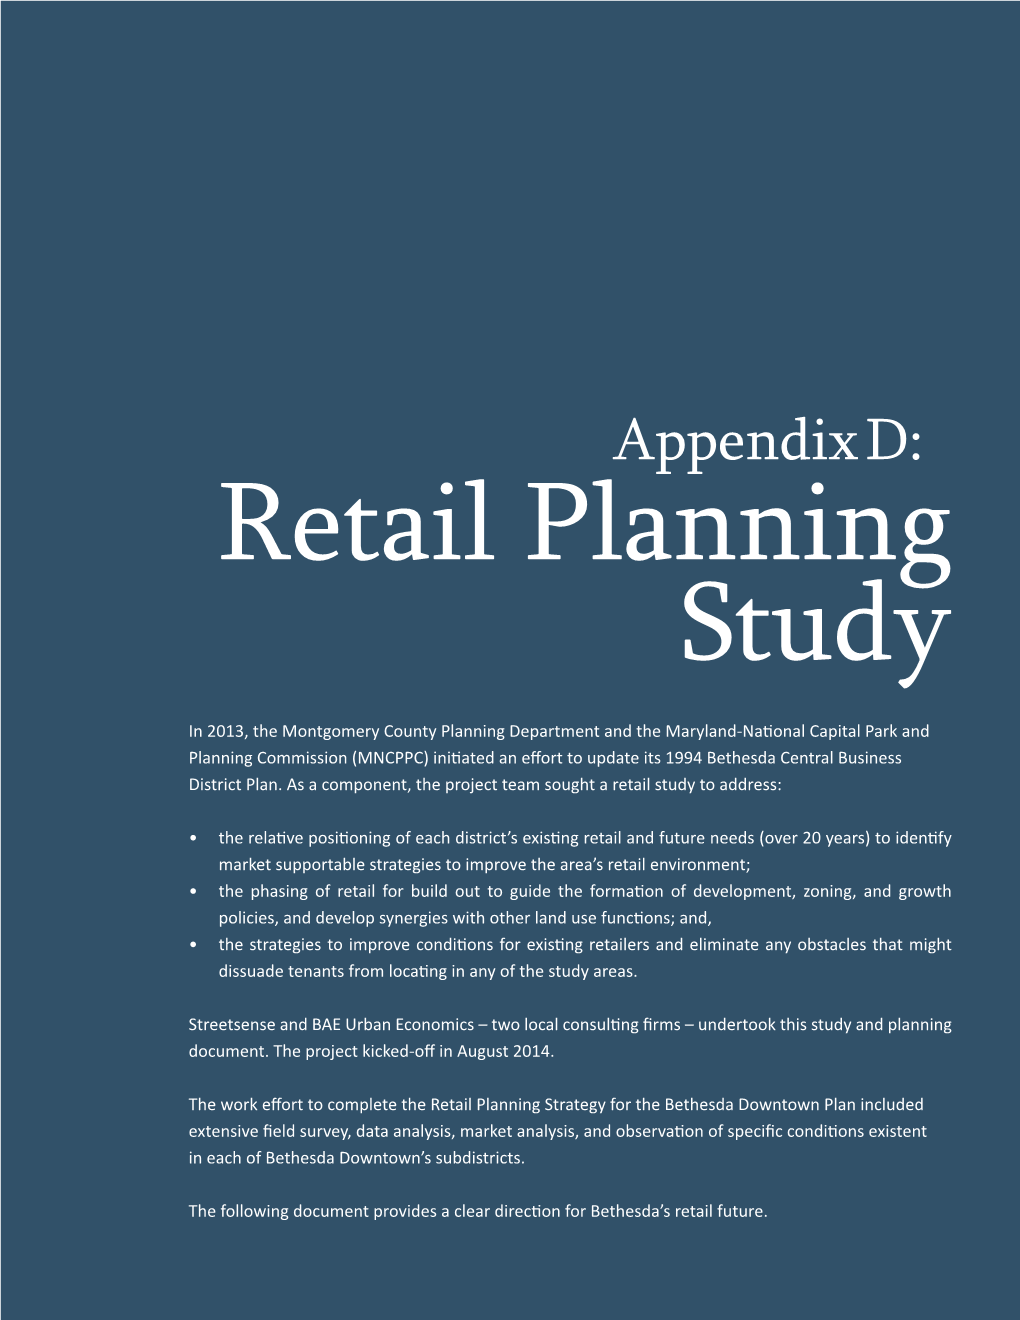 Appendix D: Retail Planning Study